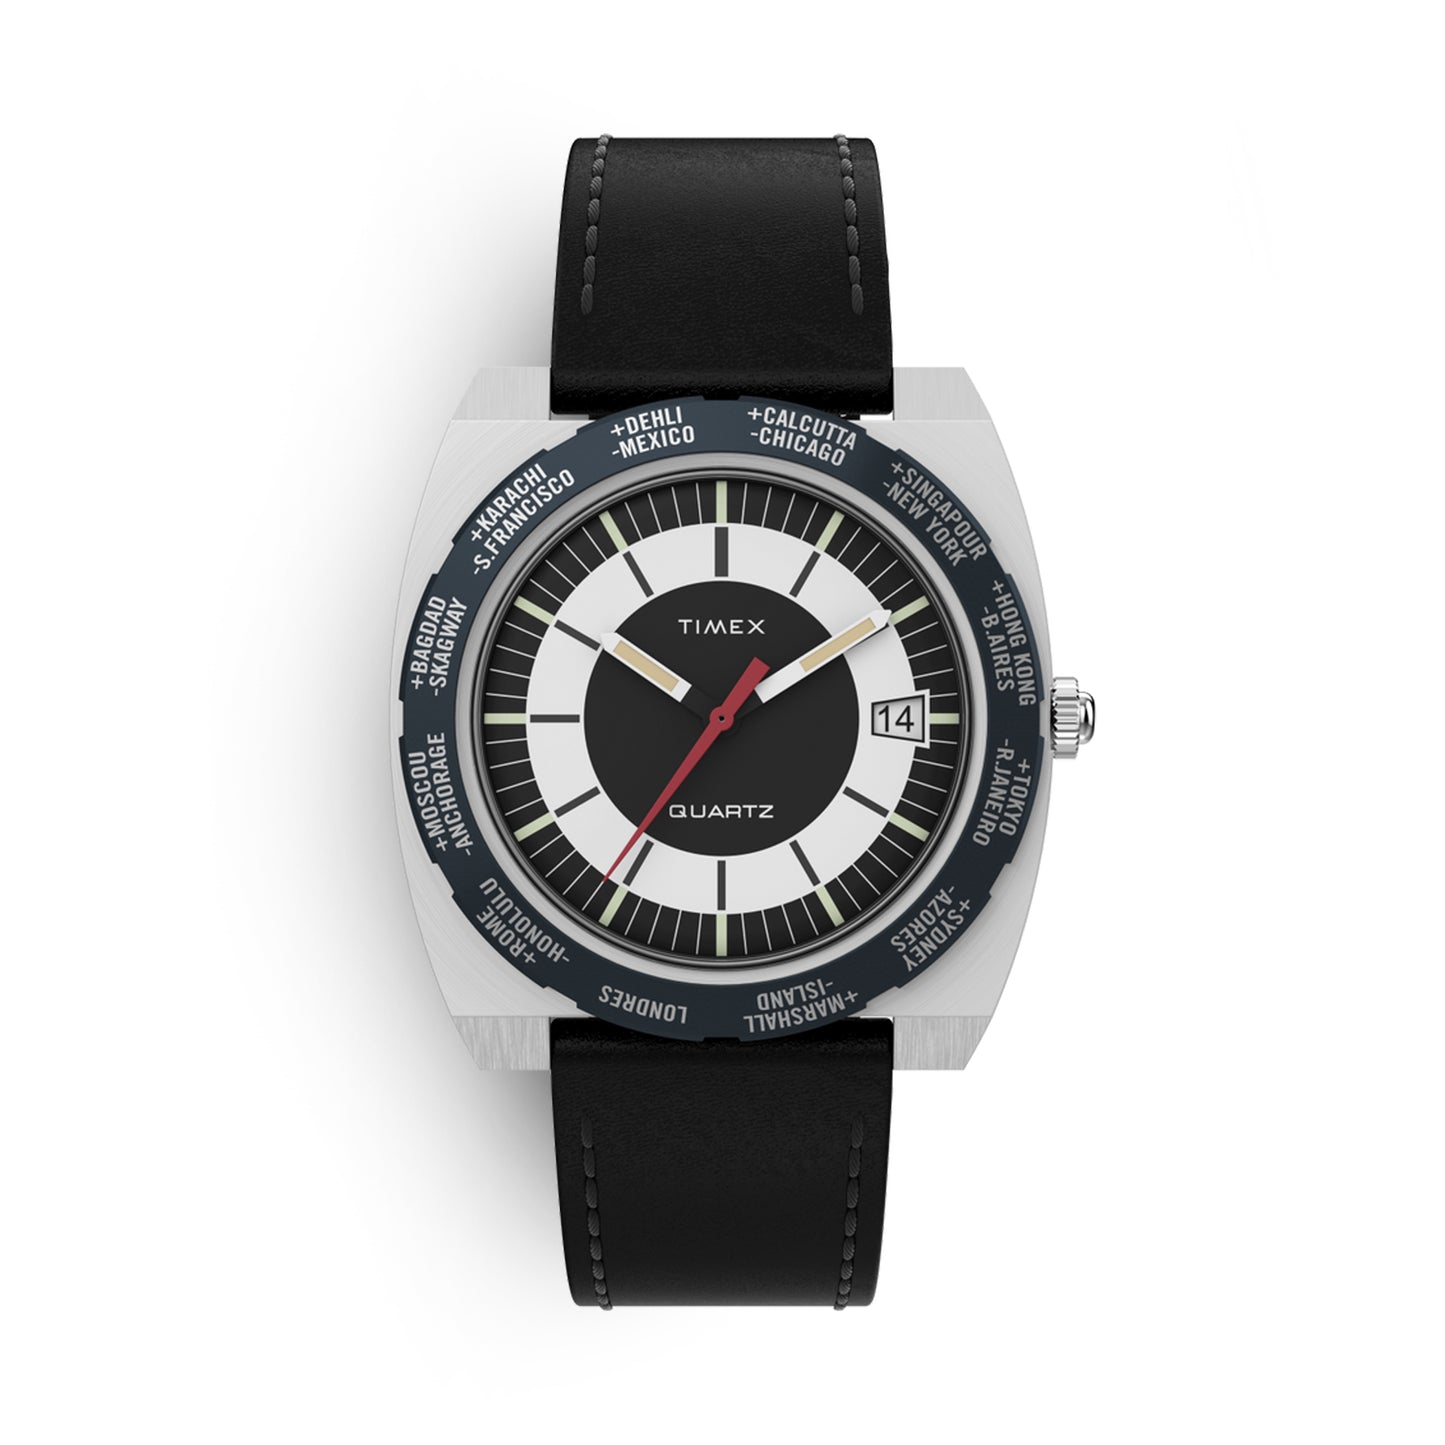 Timex World Time Reissue Watch